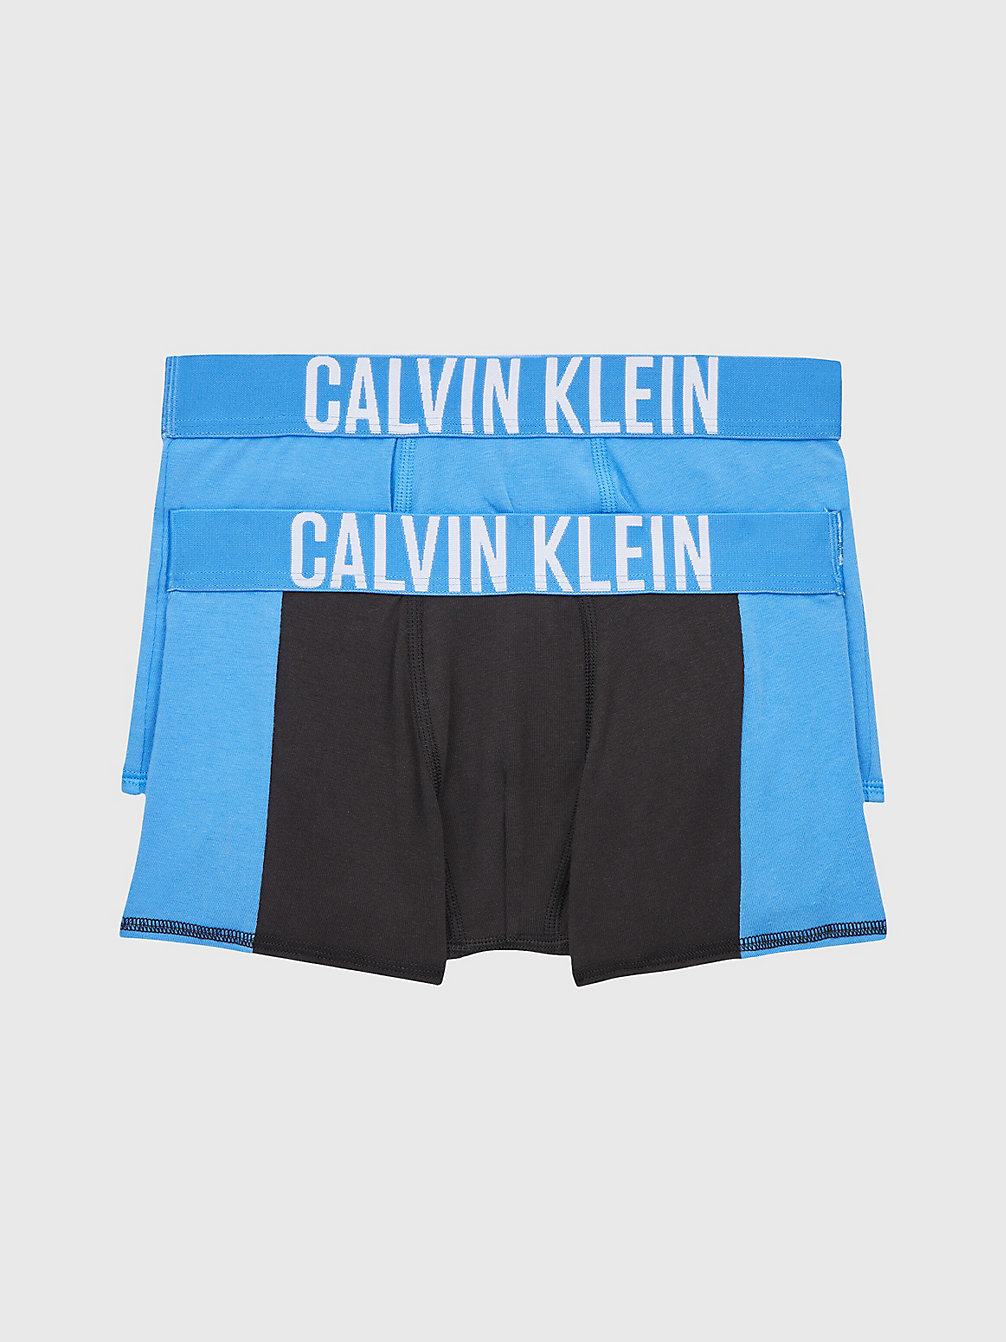 ELECTRICAQUA/PVHBLACK 2er-Pack Boxershorts Für Jungen – Intense Power undefined boys Calvin Klein